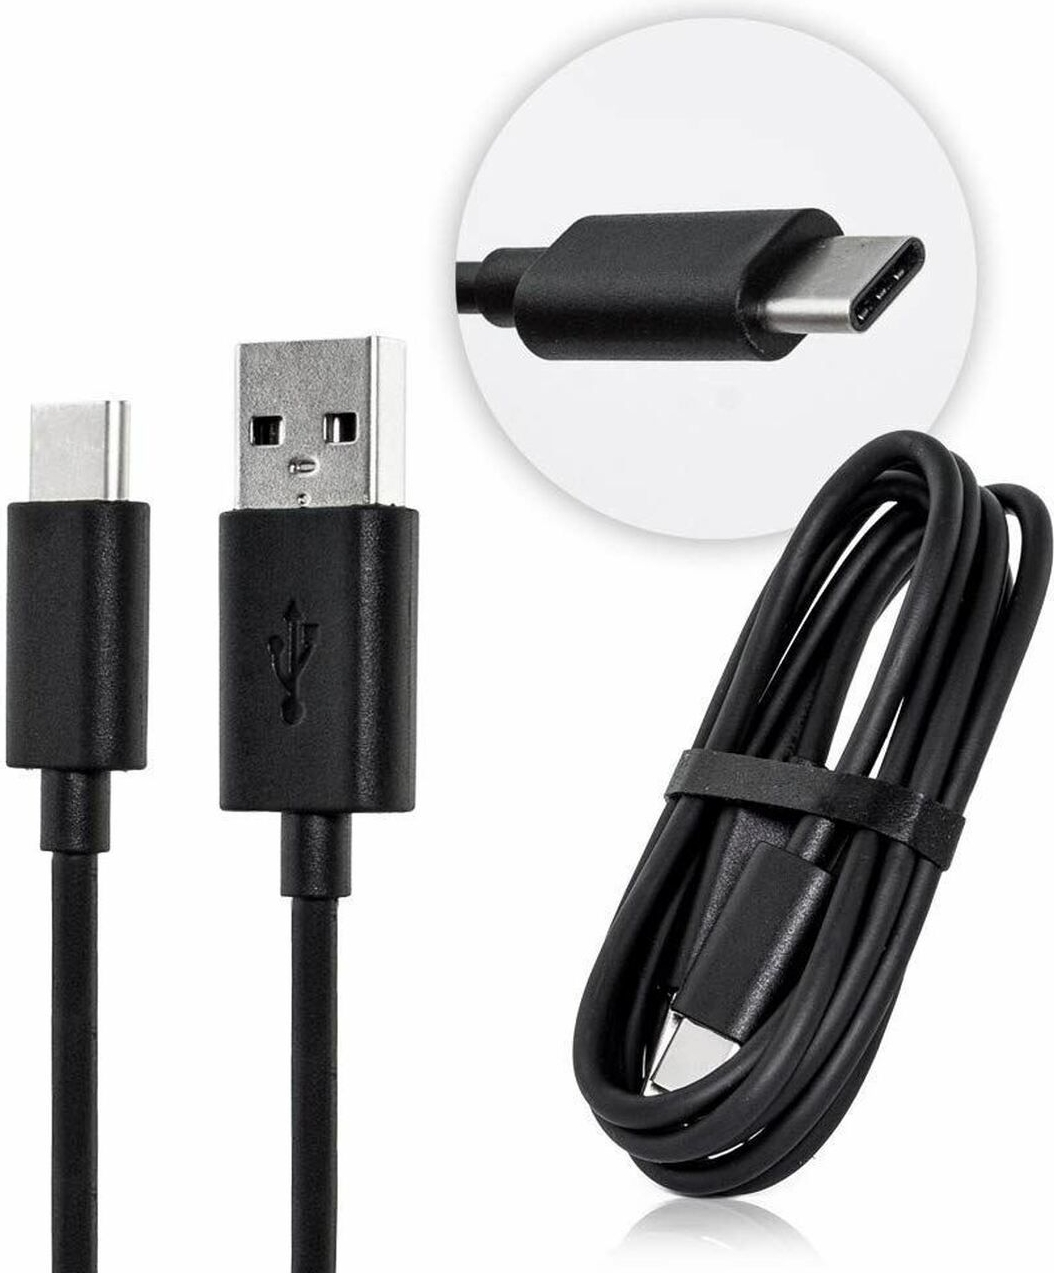 Productie redden Verbinding ᐅ • Motorola One Action SKN6473A USB-C kabel Origineel zwart - 1m |  Eenvoudig bij GSMOplader.nl